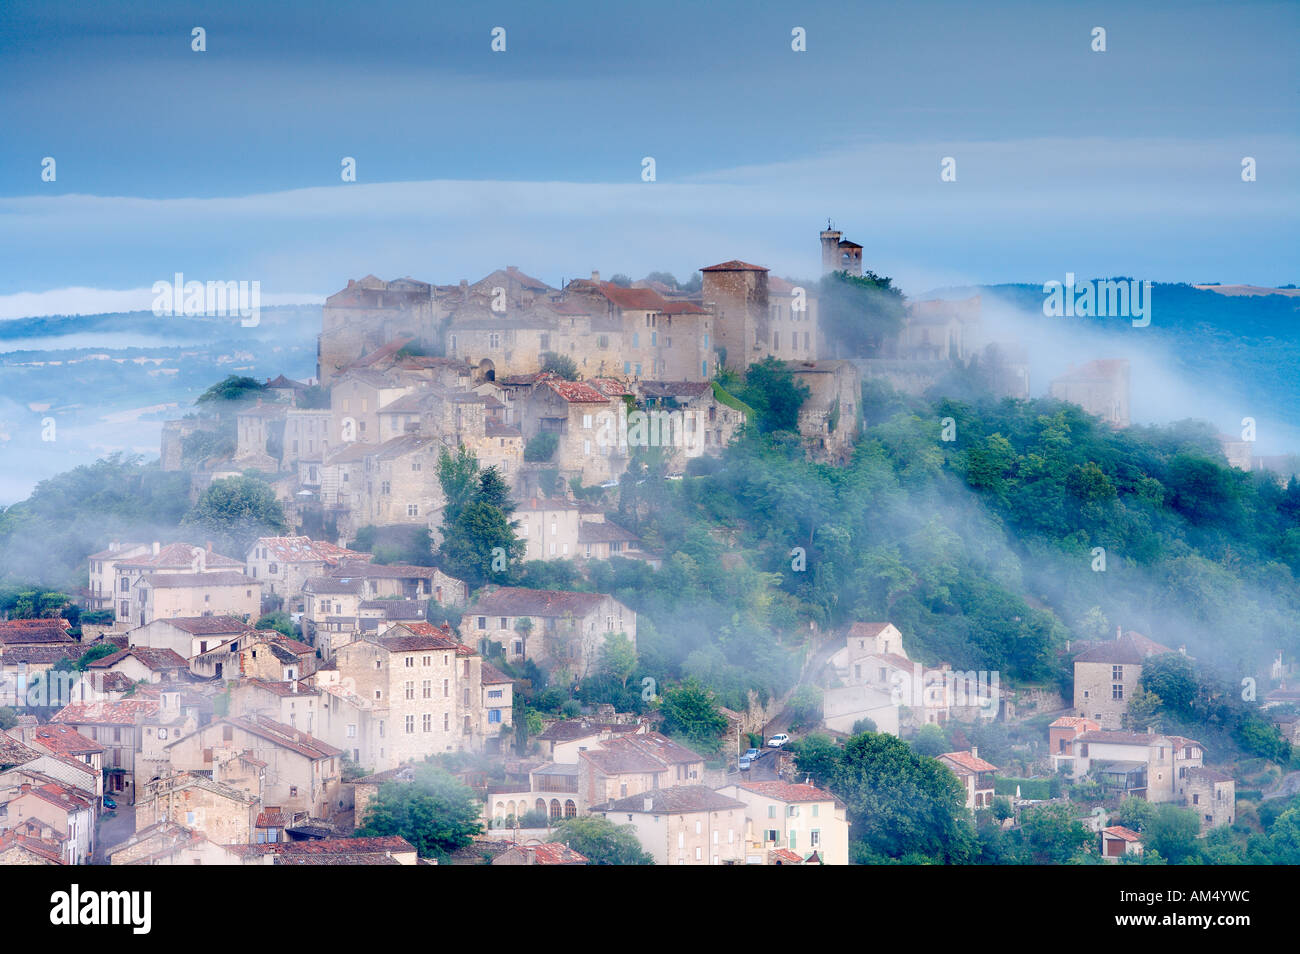 La Bastide hill top ville de Cordes sur Ciel dans la brume à l'aube Midi Pyrénées France NR Banque D'Images